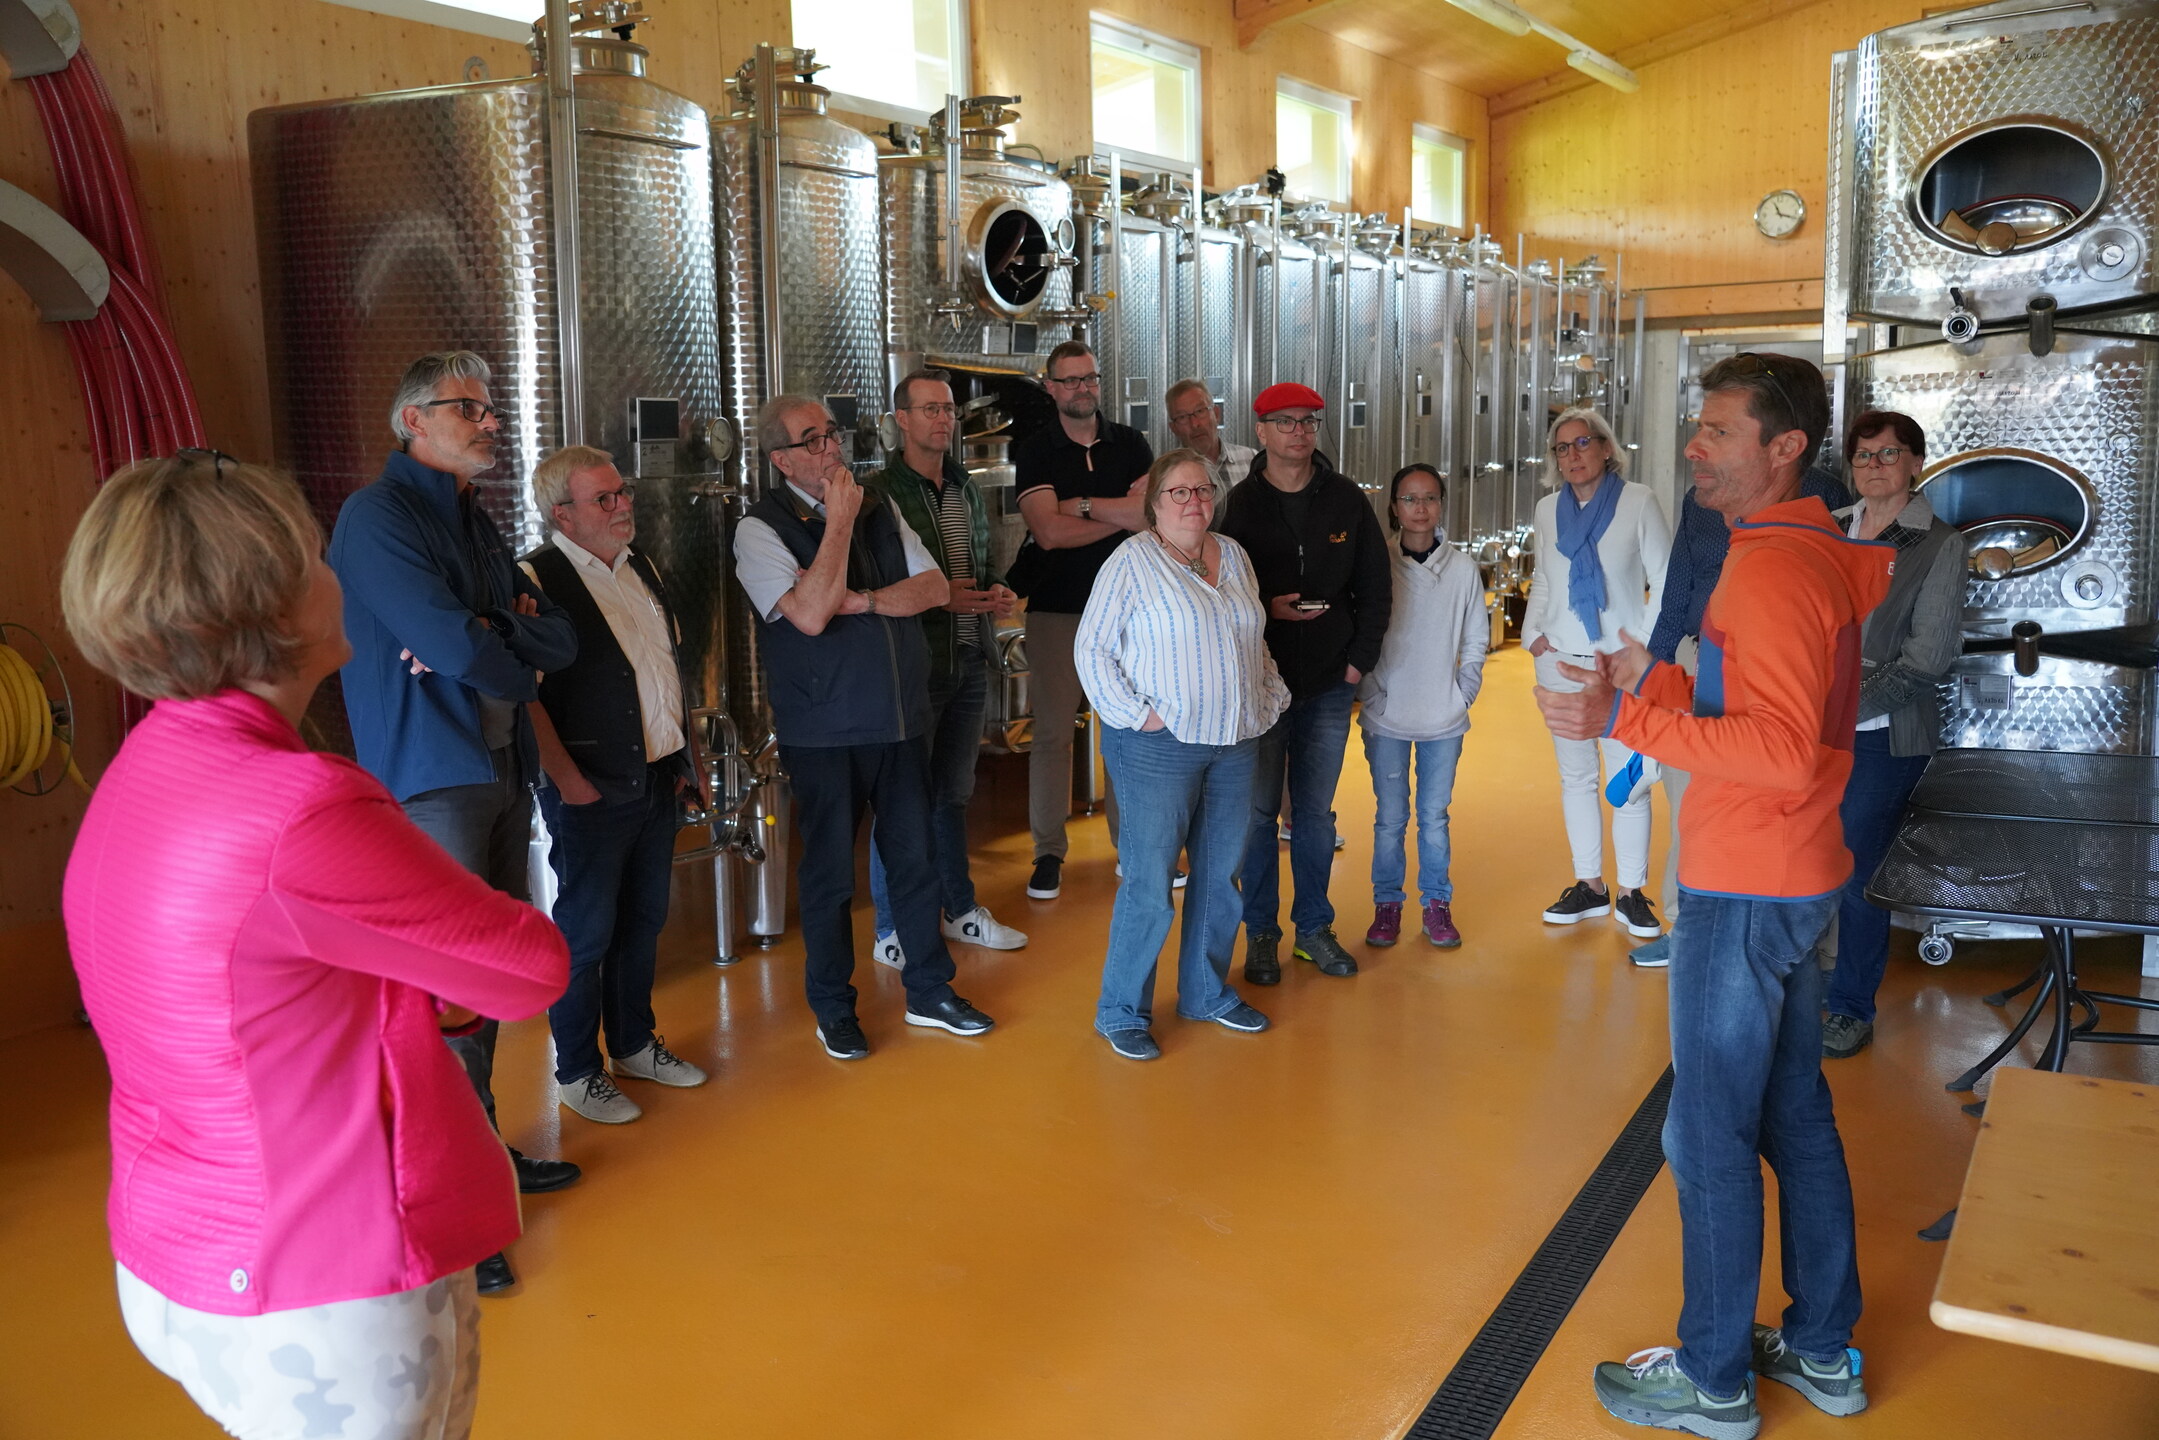 Reisebericht Tag 5 der FuW Wein-Fachstudienreise in die Schweiz 2022 Nr. 10 die Umfangreiche Info über das, was Lenz zu demeter macht, hat uns begeistert